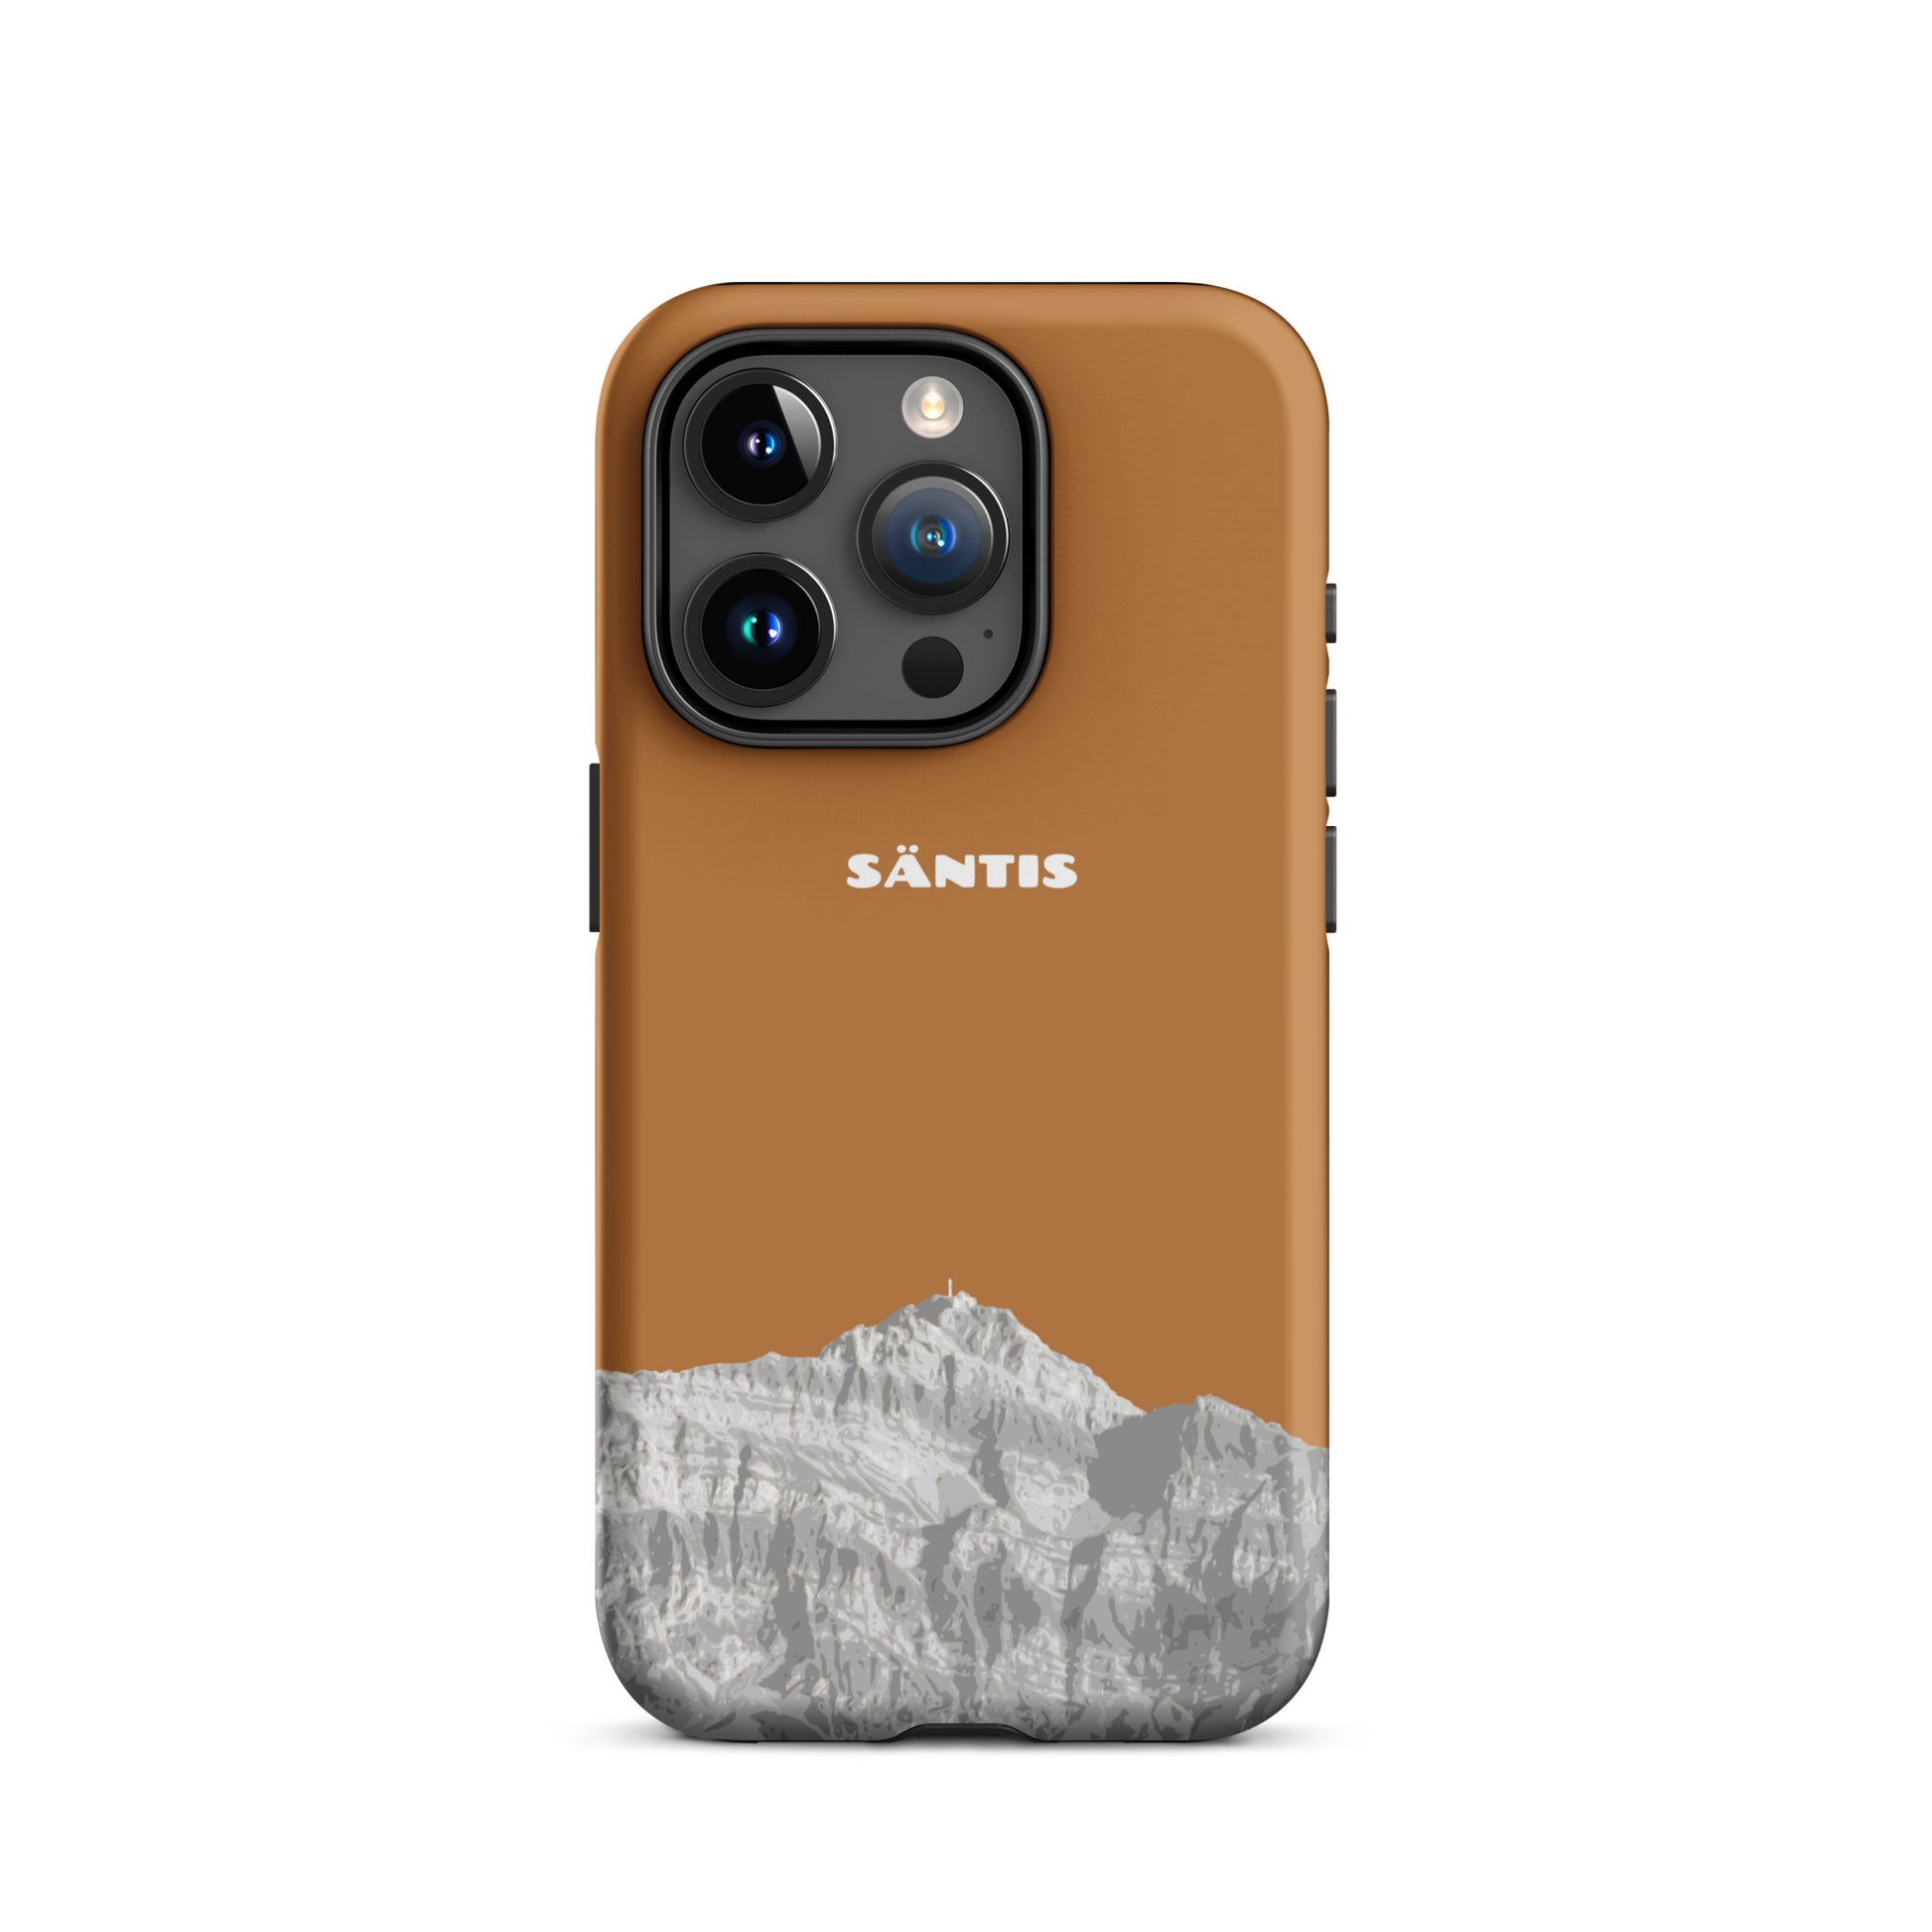 Hülle für das iPhone 15 Pro von Apple in der Farbe Kupfer, dass den Säntis im Alpstein zeigt.